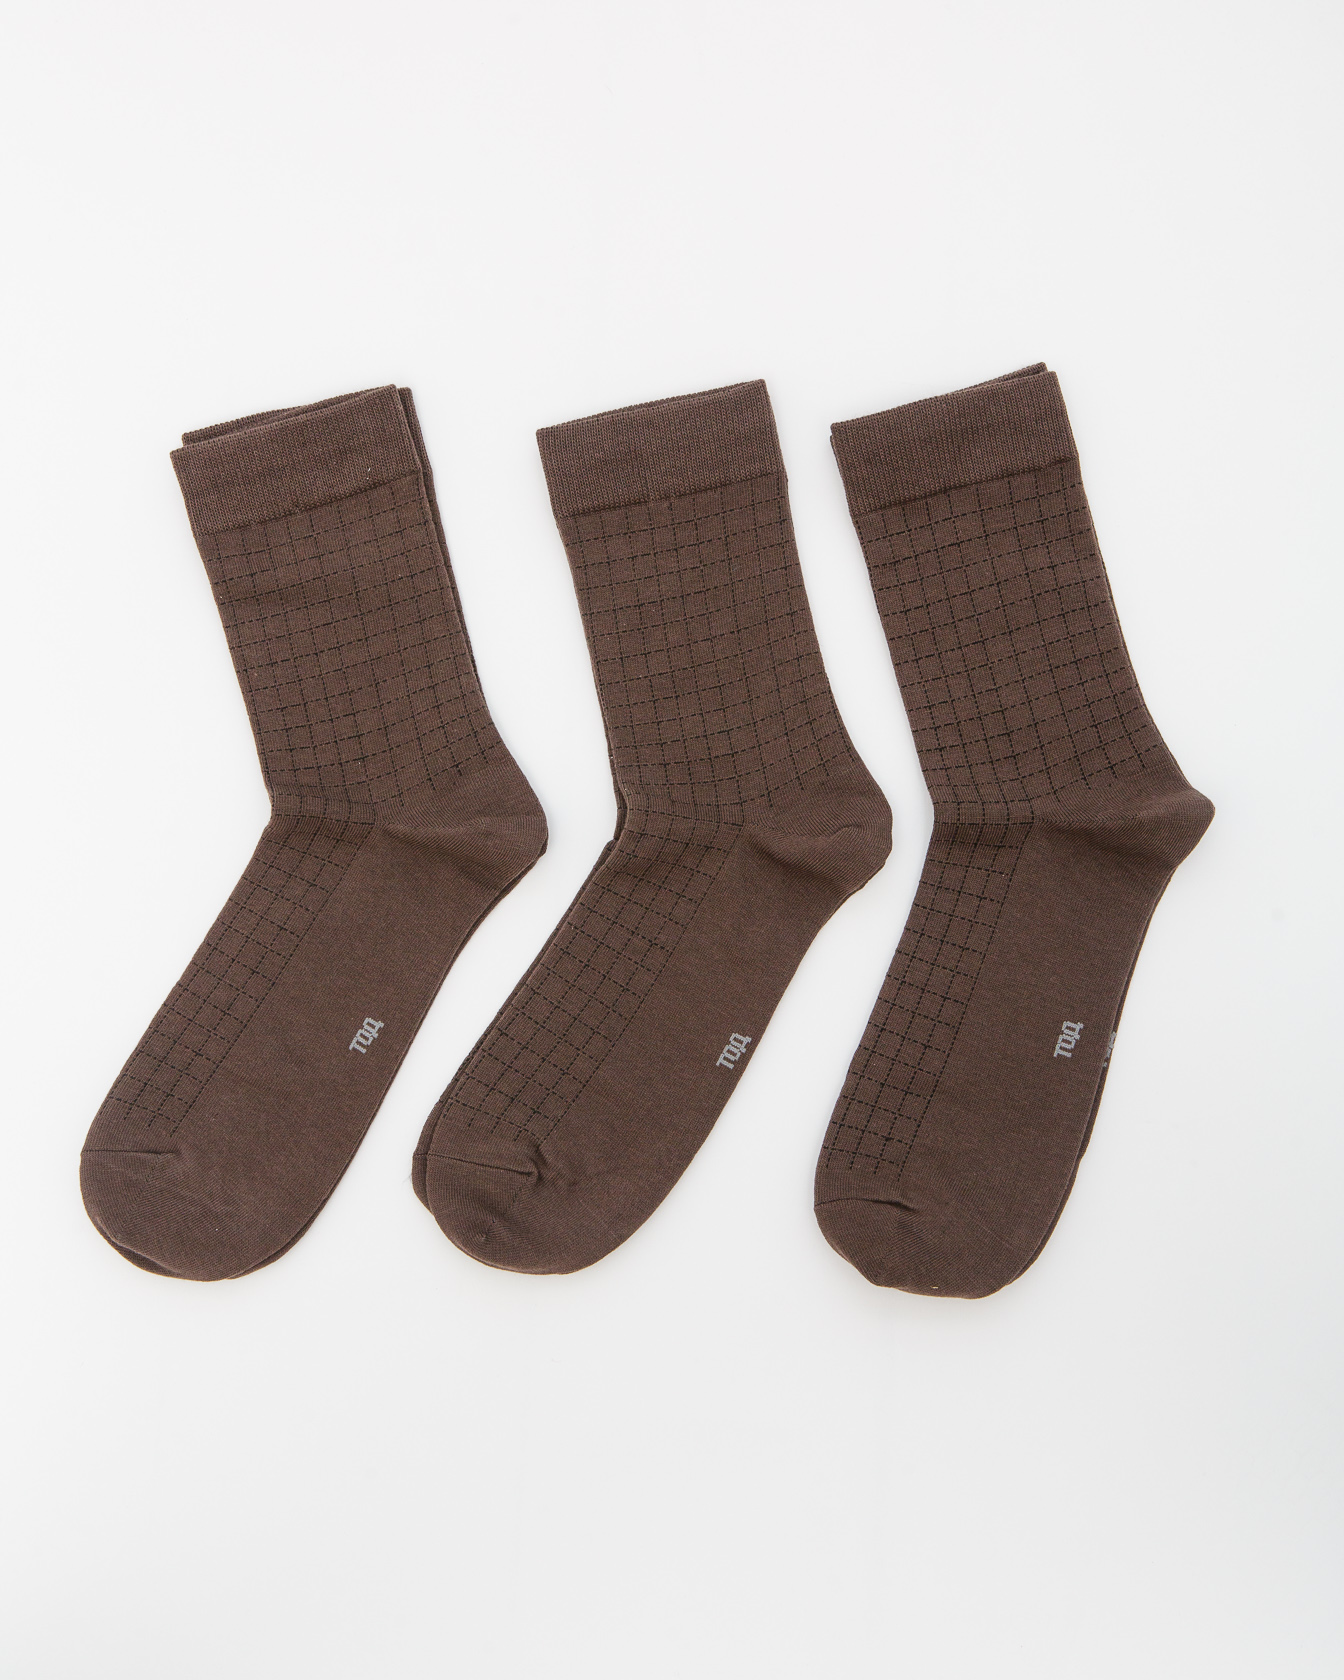 Носки хлопковые ТОД 20015 коричневые (3 шт) ТОД ОЙМС ХХК, цвет коричневый, размер 39-42